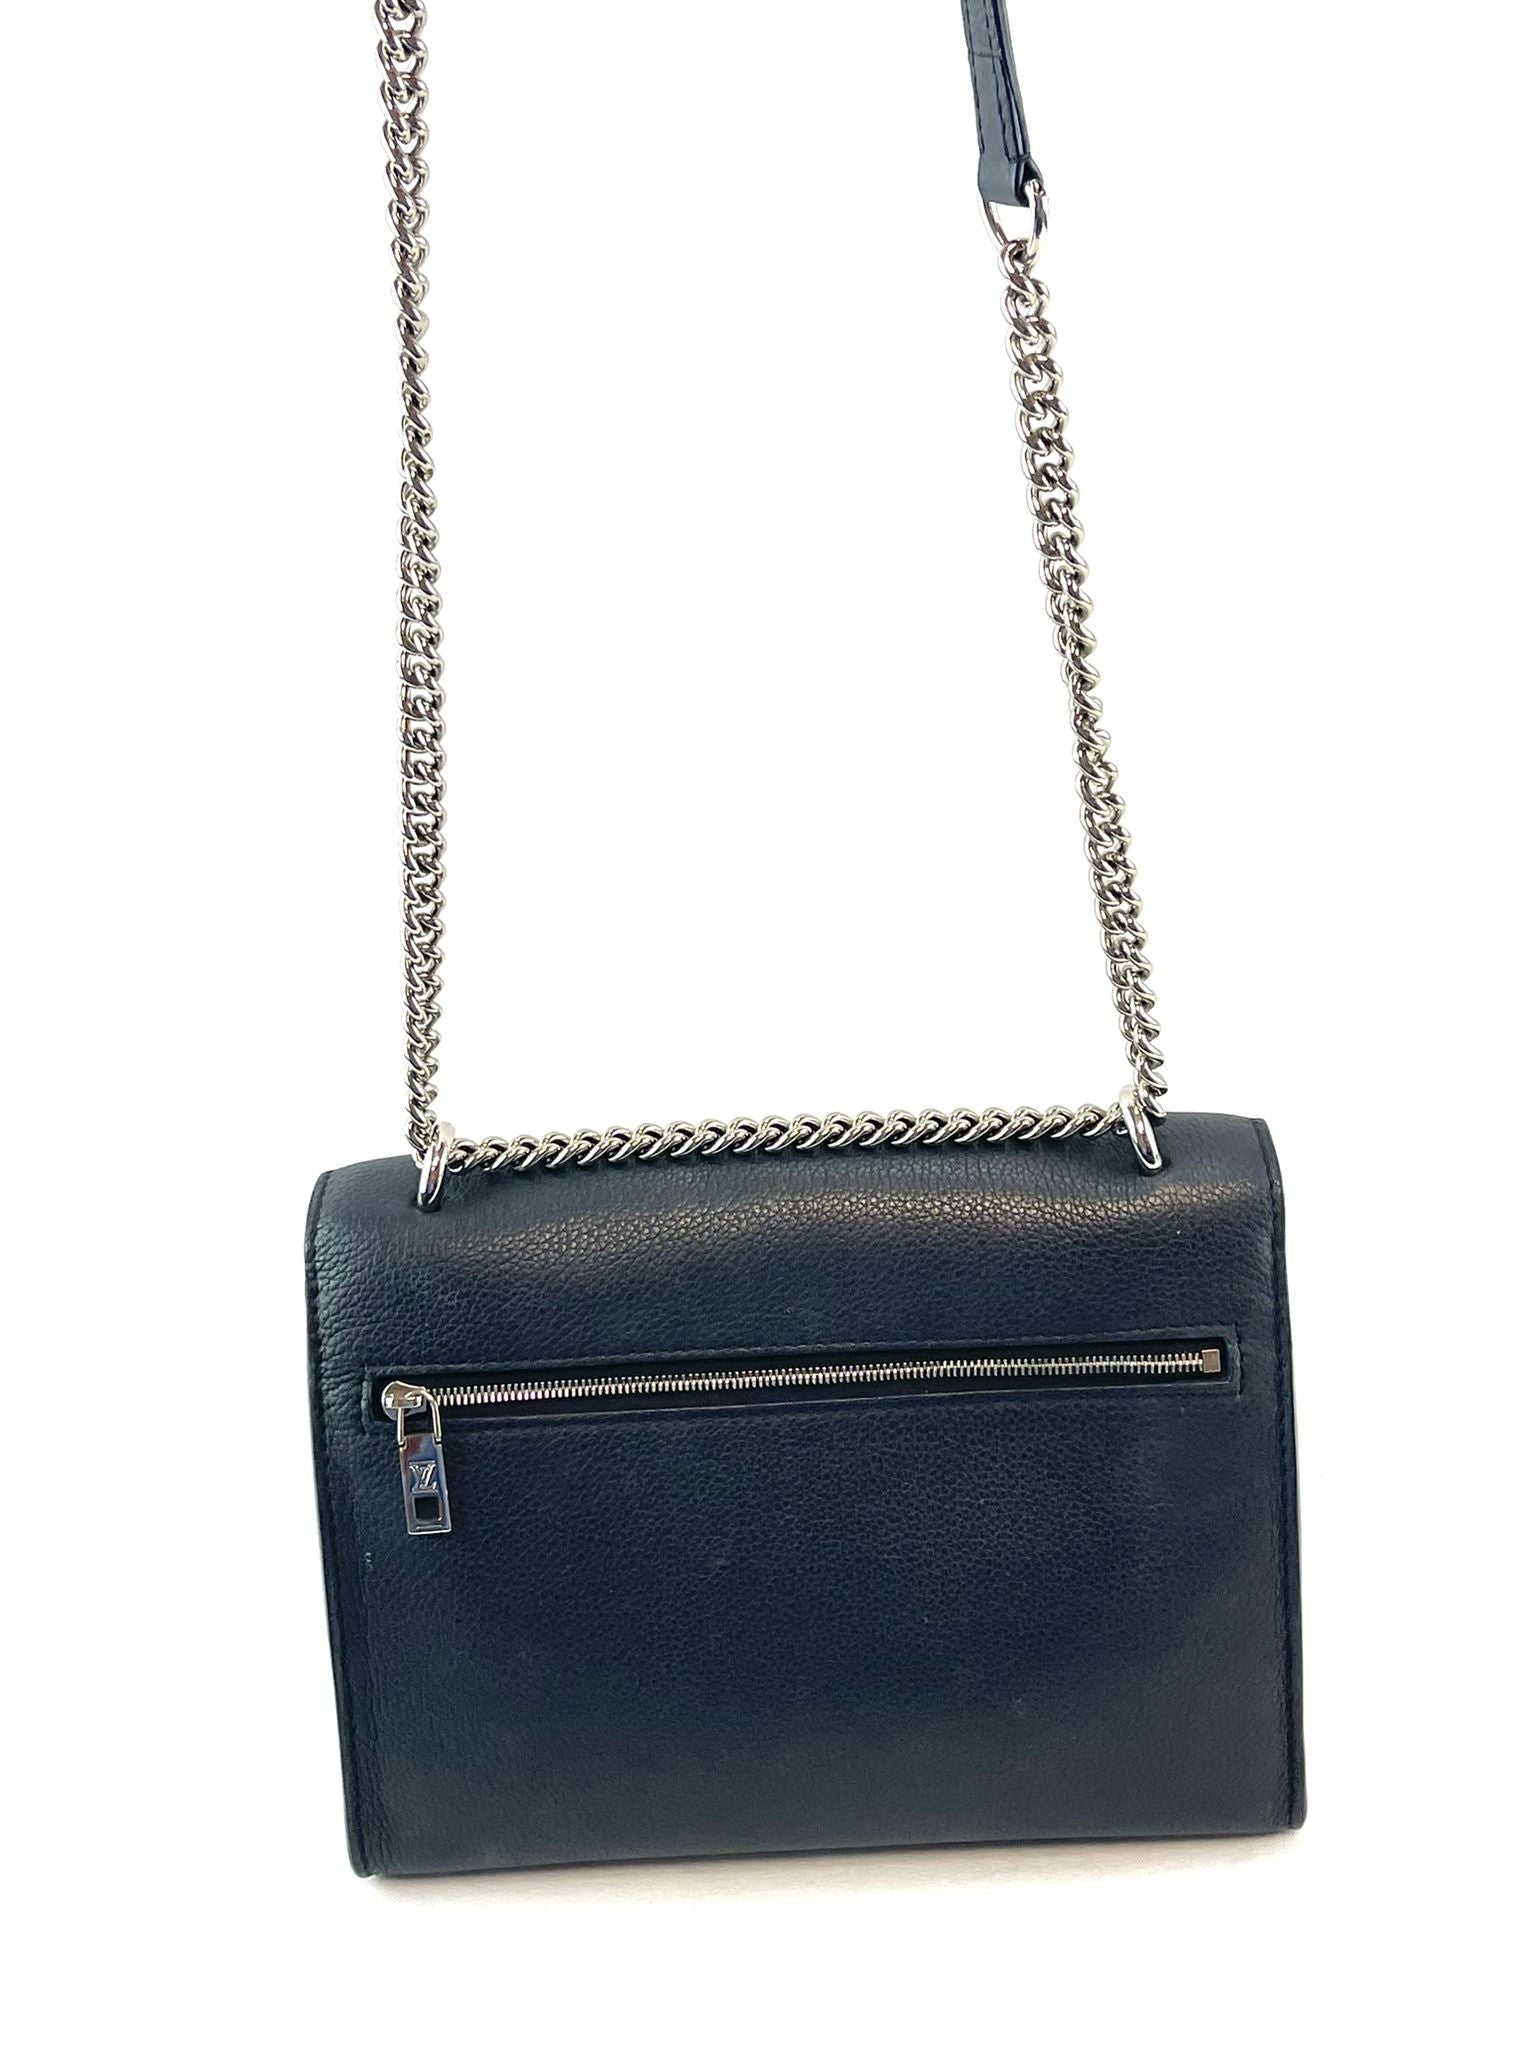 Louis Vuitton My Lockme Pochette - ShopStyle Shoulder Bags